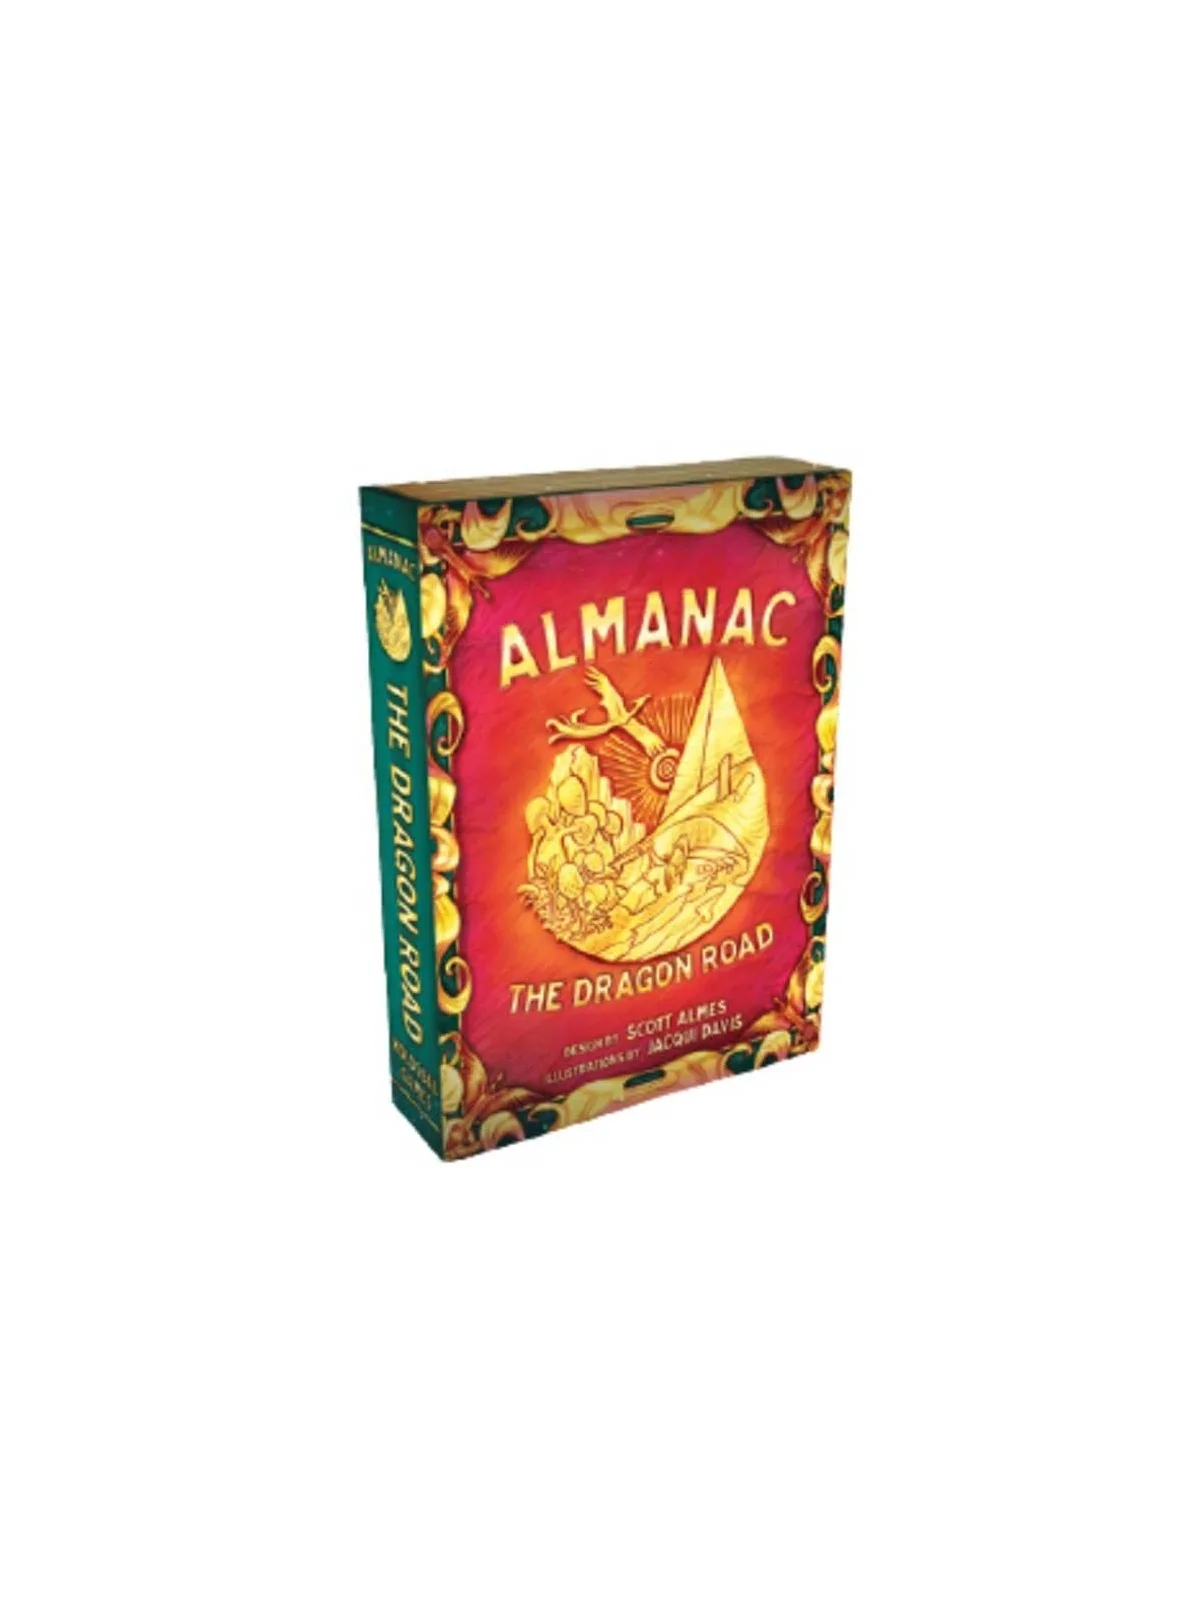 Comprar Almanac barato al mejor precio 29,97 € de SD GAMES